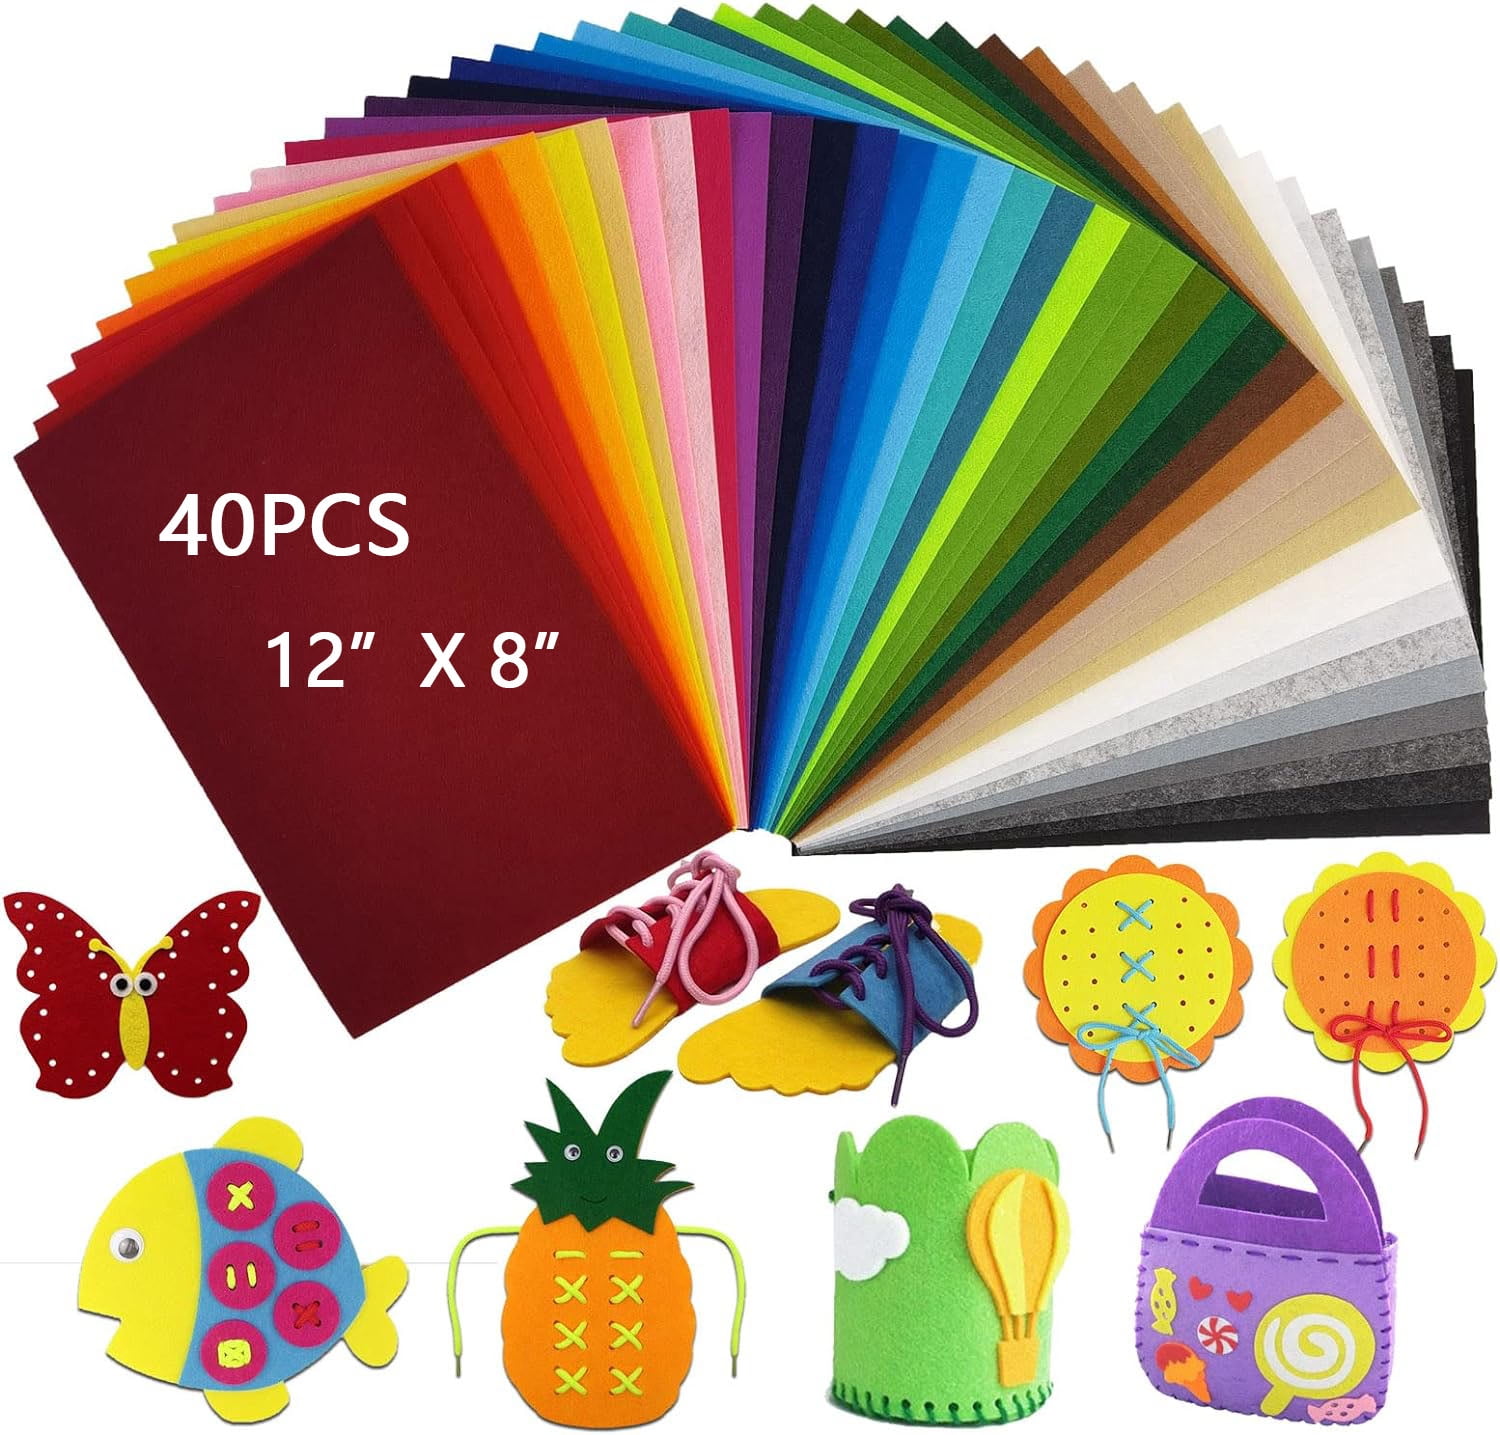 Z-FOAM4X6-12 Foam Craft Sheets 4x6 Assorted Colors 12 Pack - PAPER